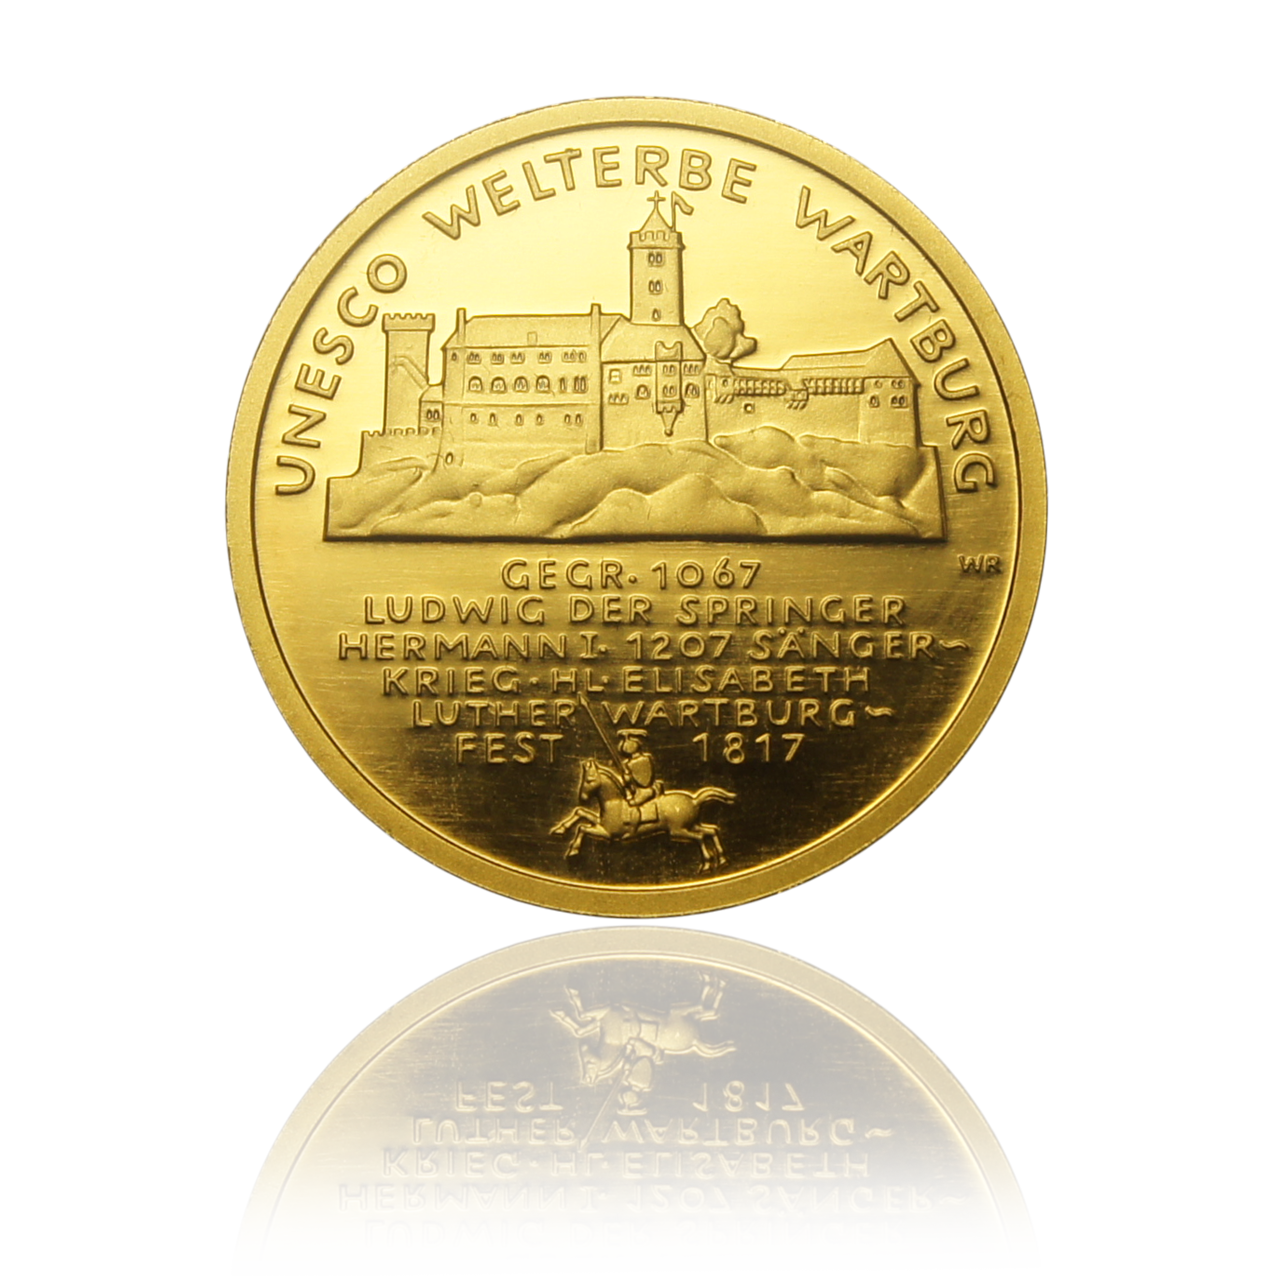 100 Euro gold coin "Wartburg" 2011 - Germany 1/2 oz gold coin